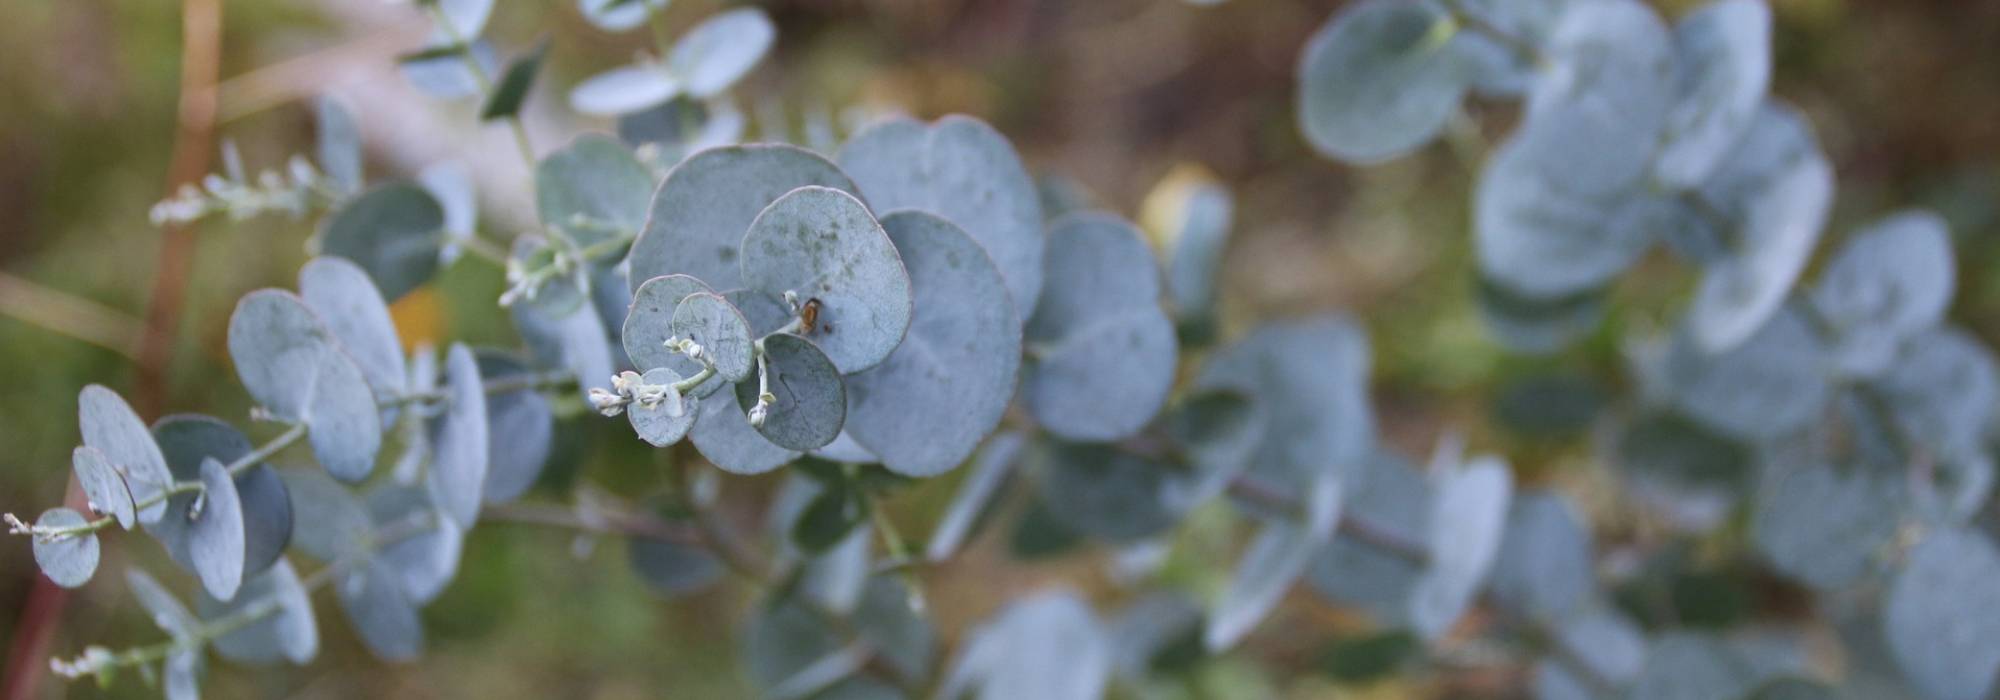 Les feuilles de mon eucalyptus sèchent - France Bleu